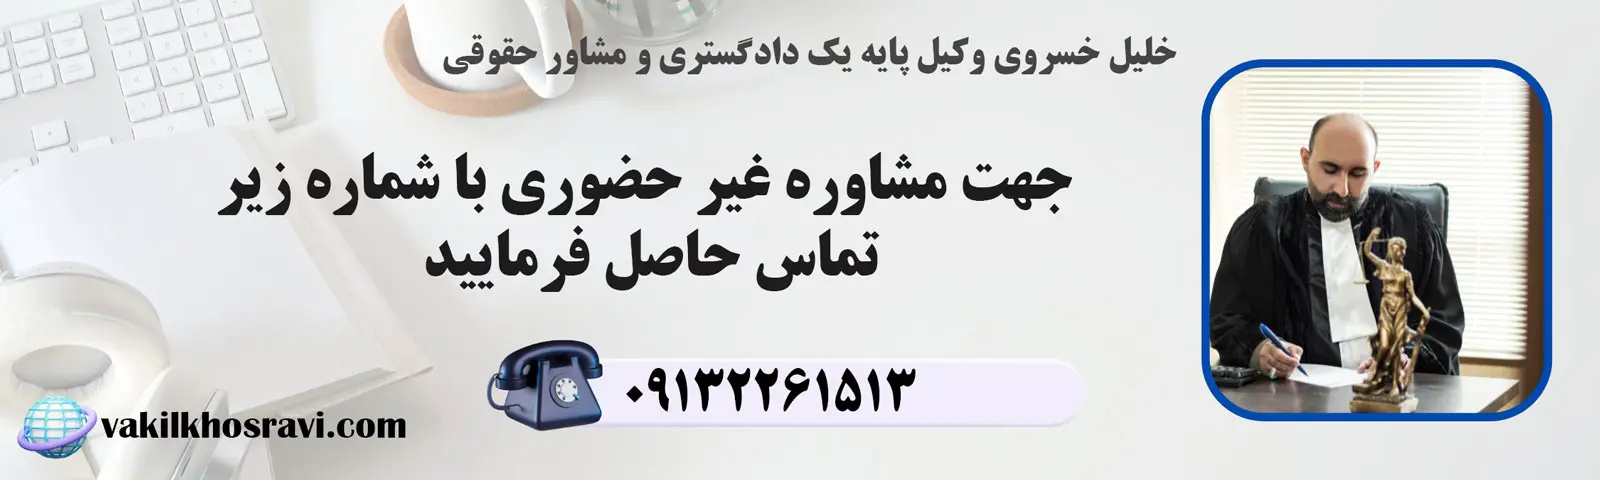 مشاوره فوری با وکیل در اصفهان